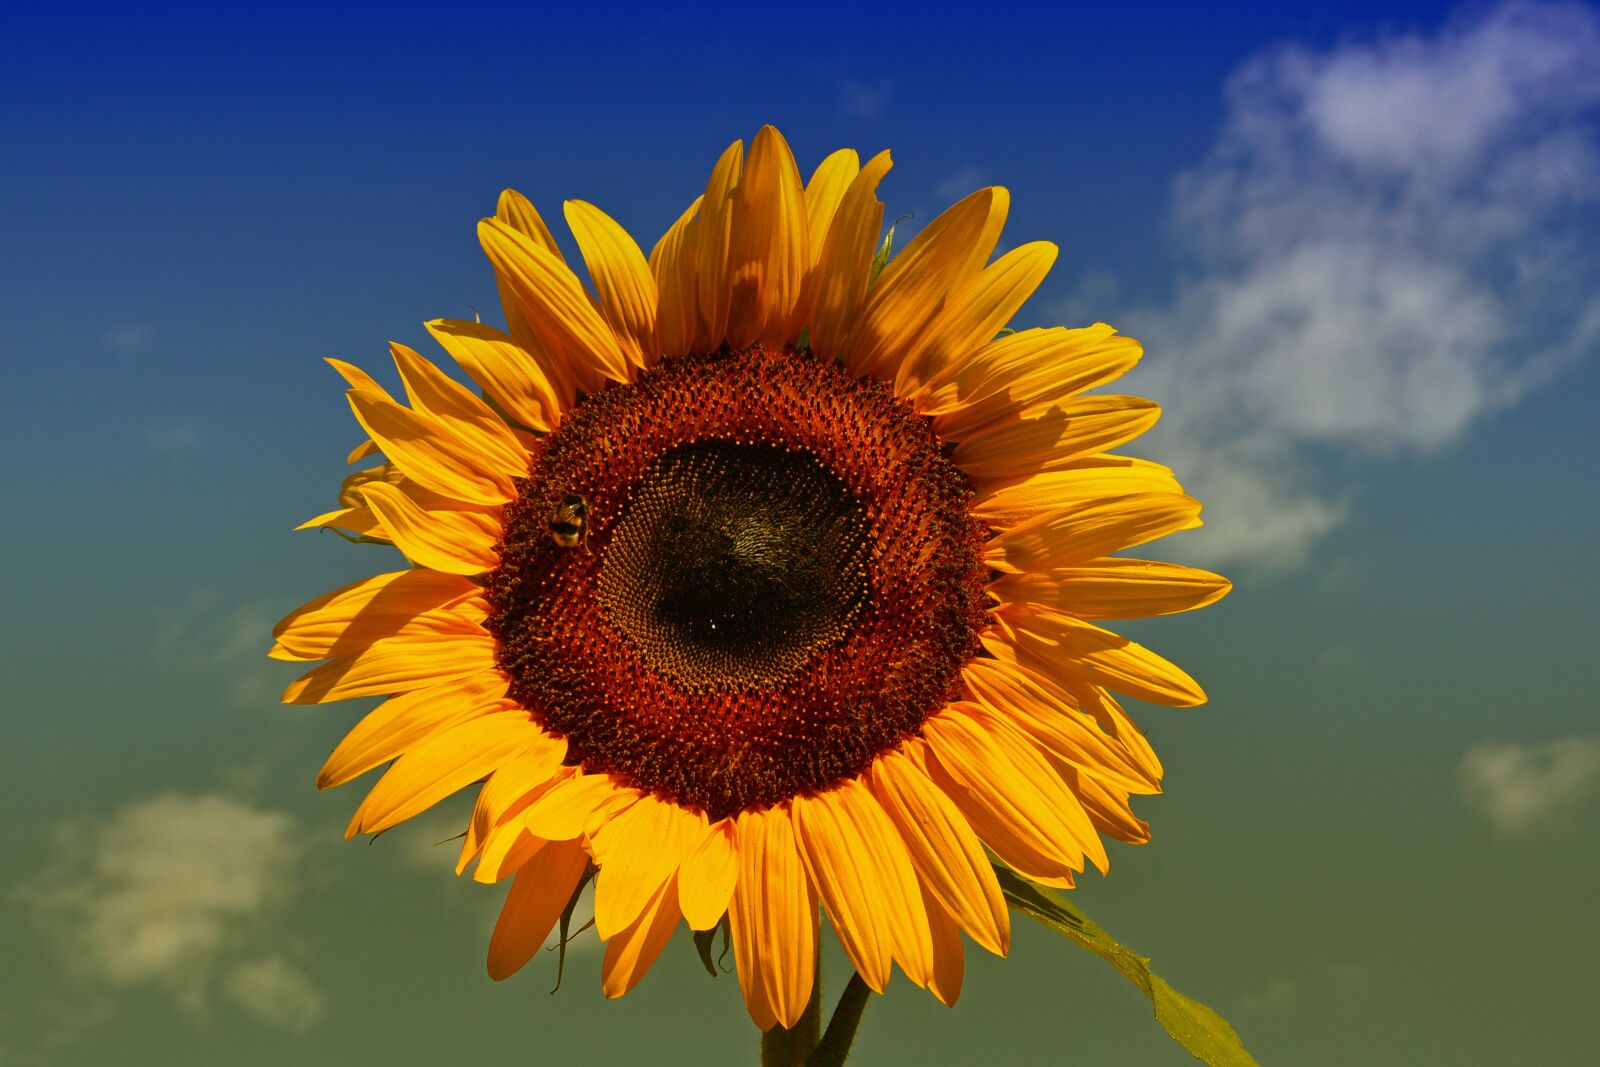 Nikon 1 V2 sample photo. Sunflower, yellow, sun photography